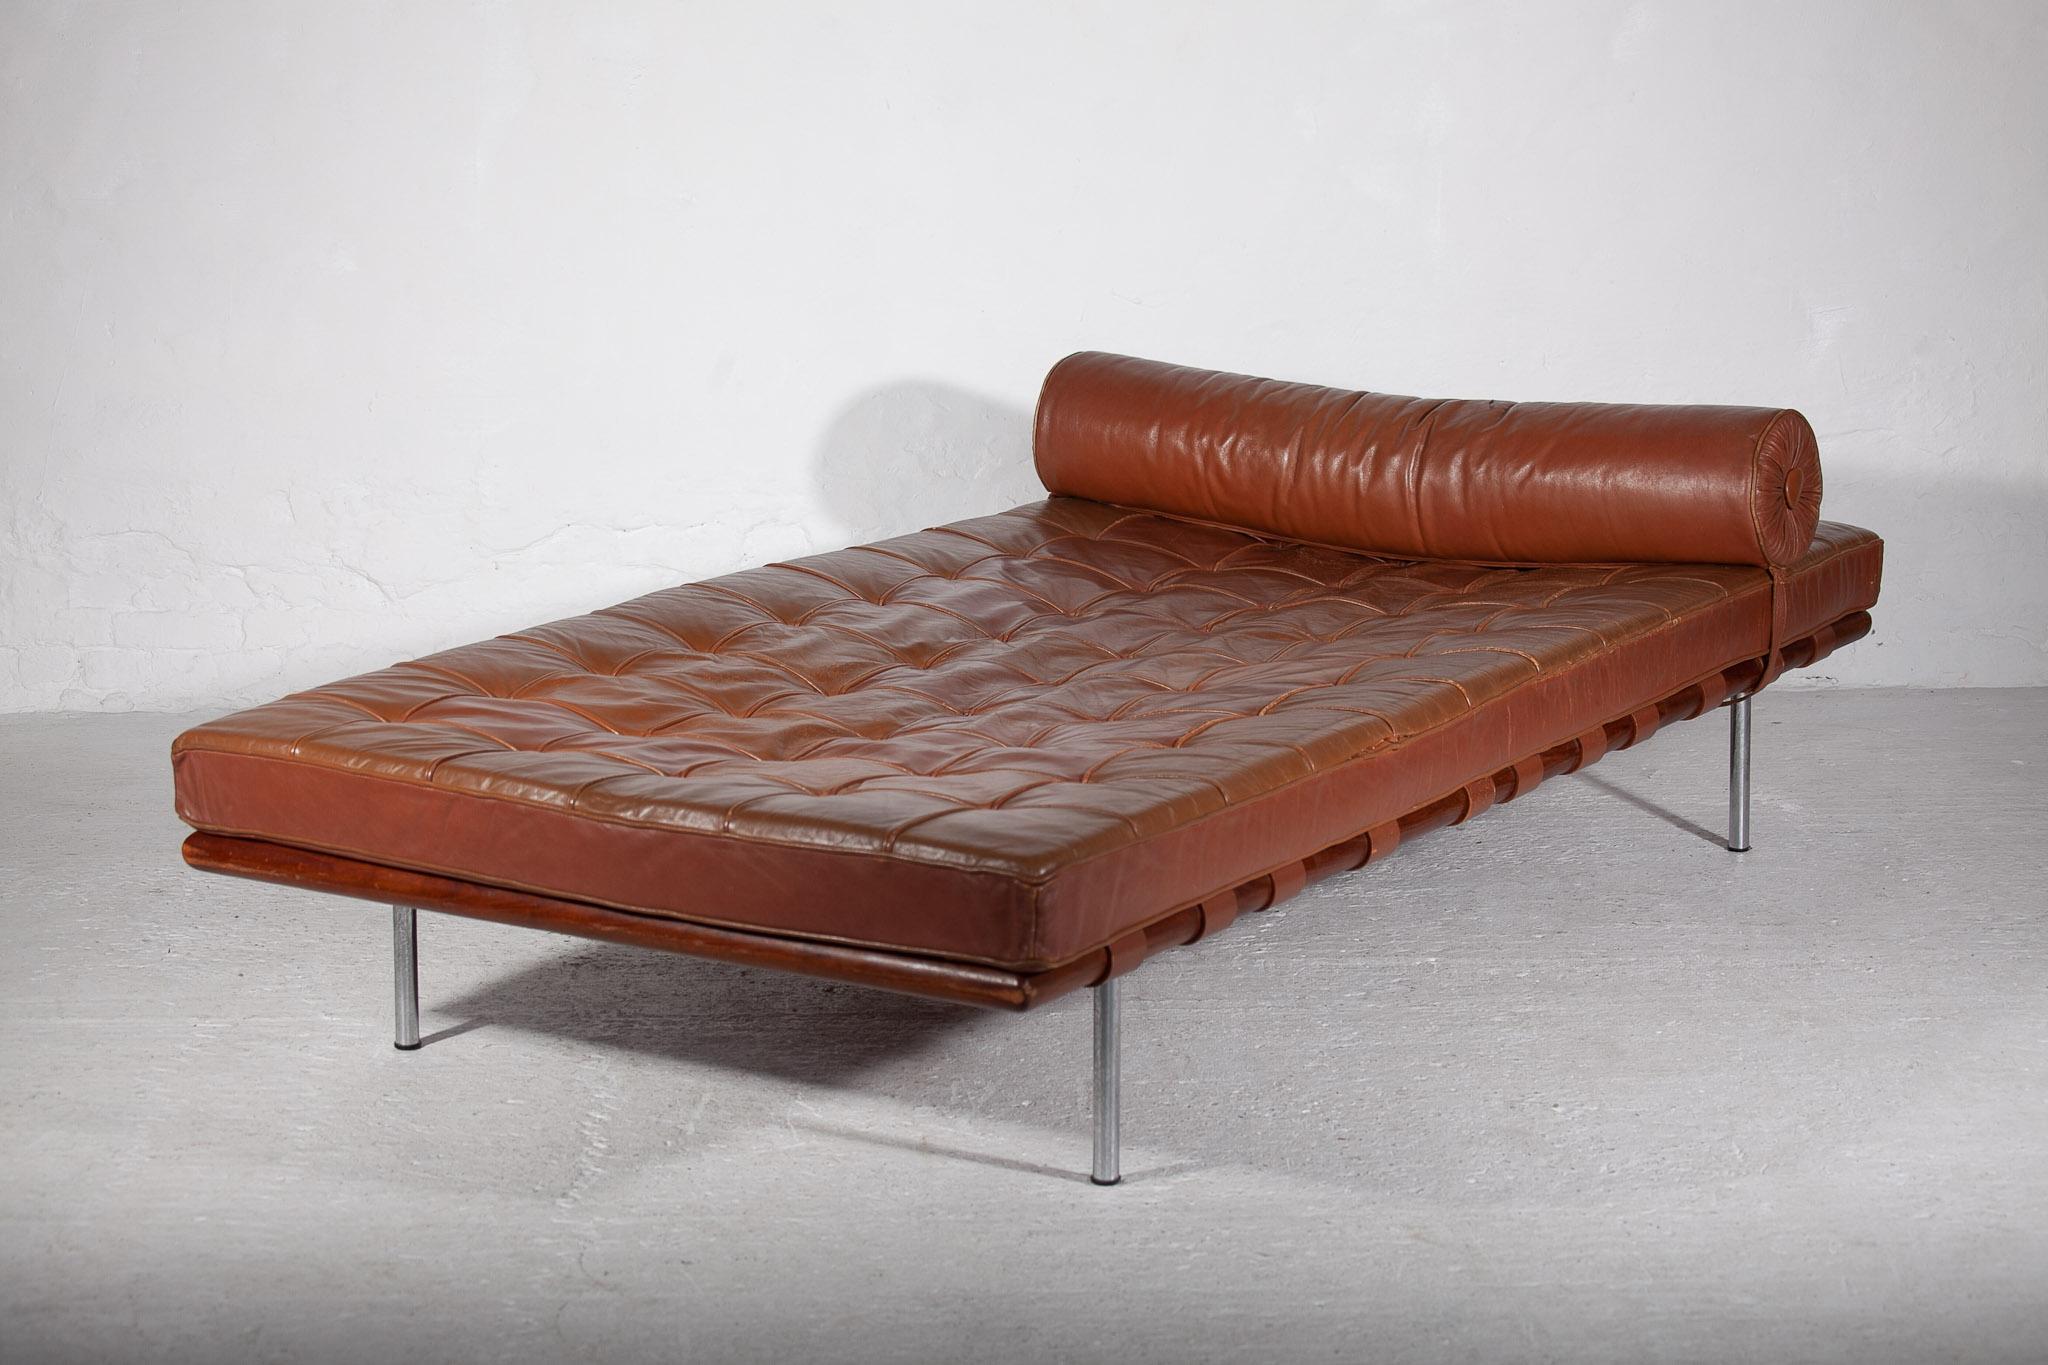 Ikonisches originales braunes Leder-Patchwork-Tagesbett, entworfen von Mies van der Rohe, hergestellt von Knoll in den 1960er Jahren. Schöne Patina und sehr gute Qualität Lederpolsterung entworfen Matratze in Kombination mit einem Teakholzrahmen und